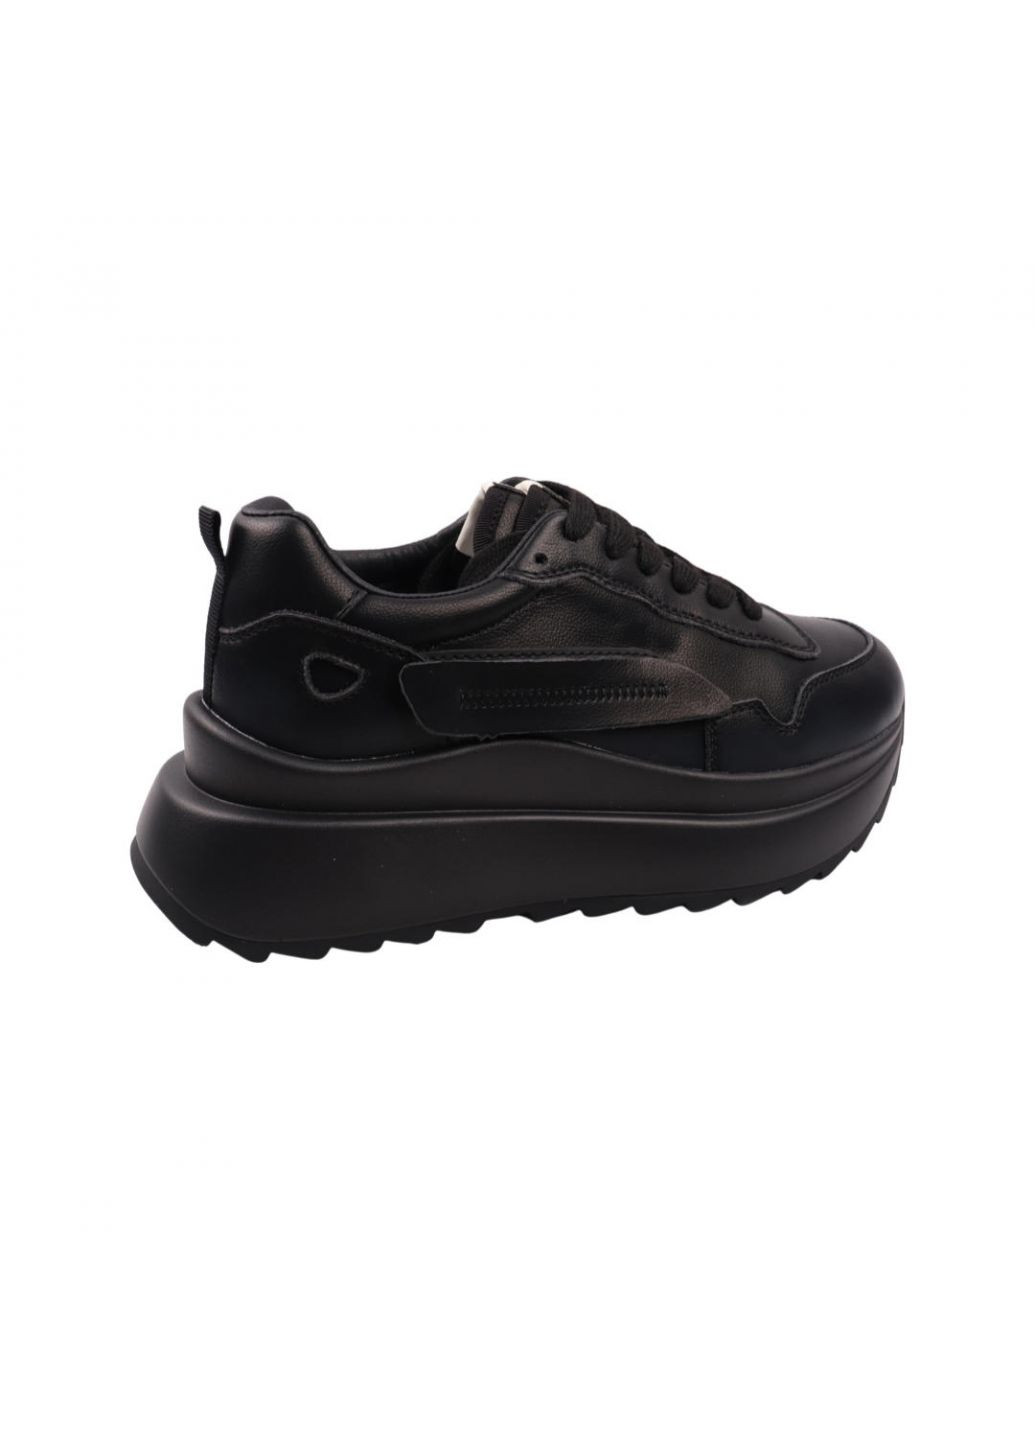 Чорні кросівки жіночі чорні натуральна шкіра Lifexpert 1084-22DK